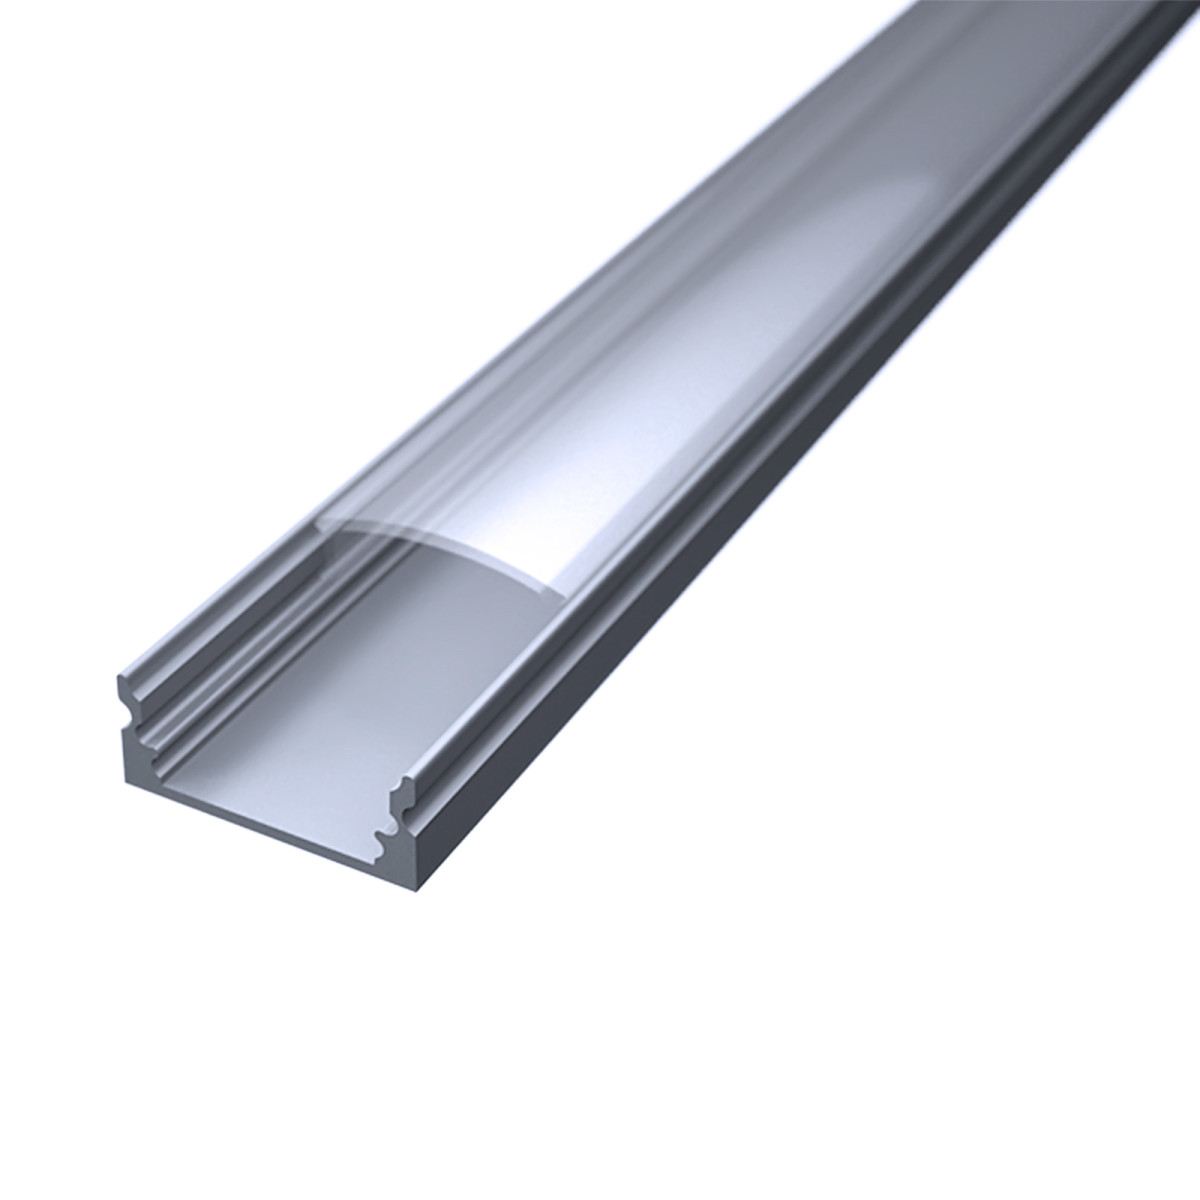 LED Flachprofil "Slim-Line" | Abdeckung transparent | Zuschnitt auf 21cm |